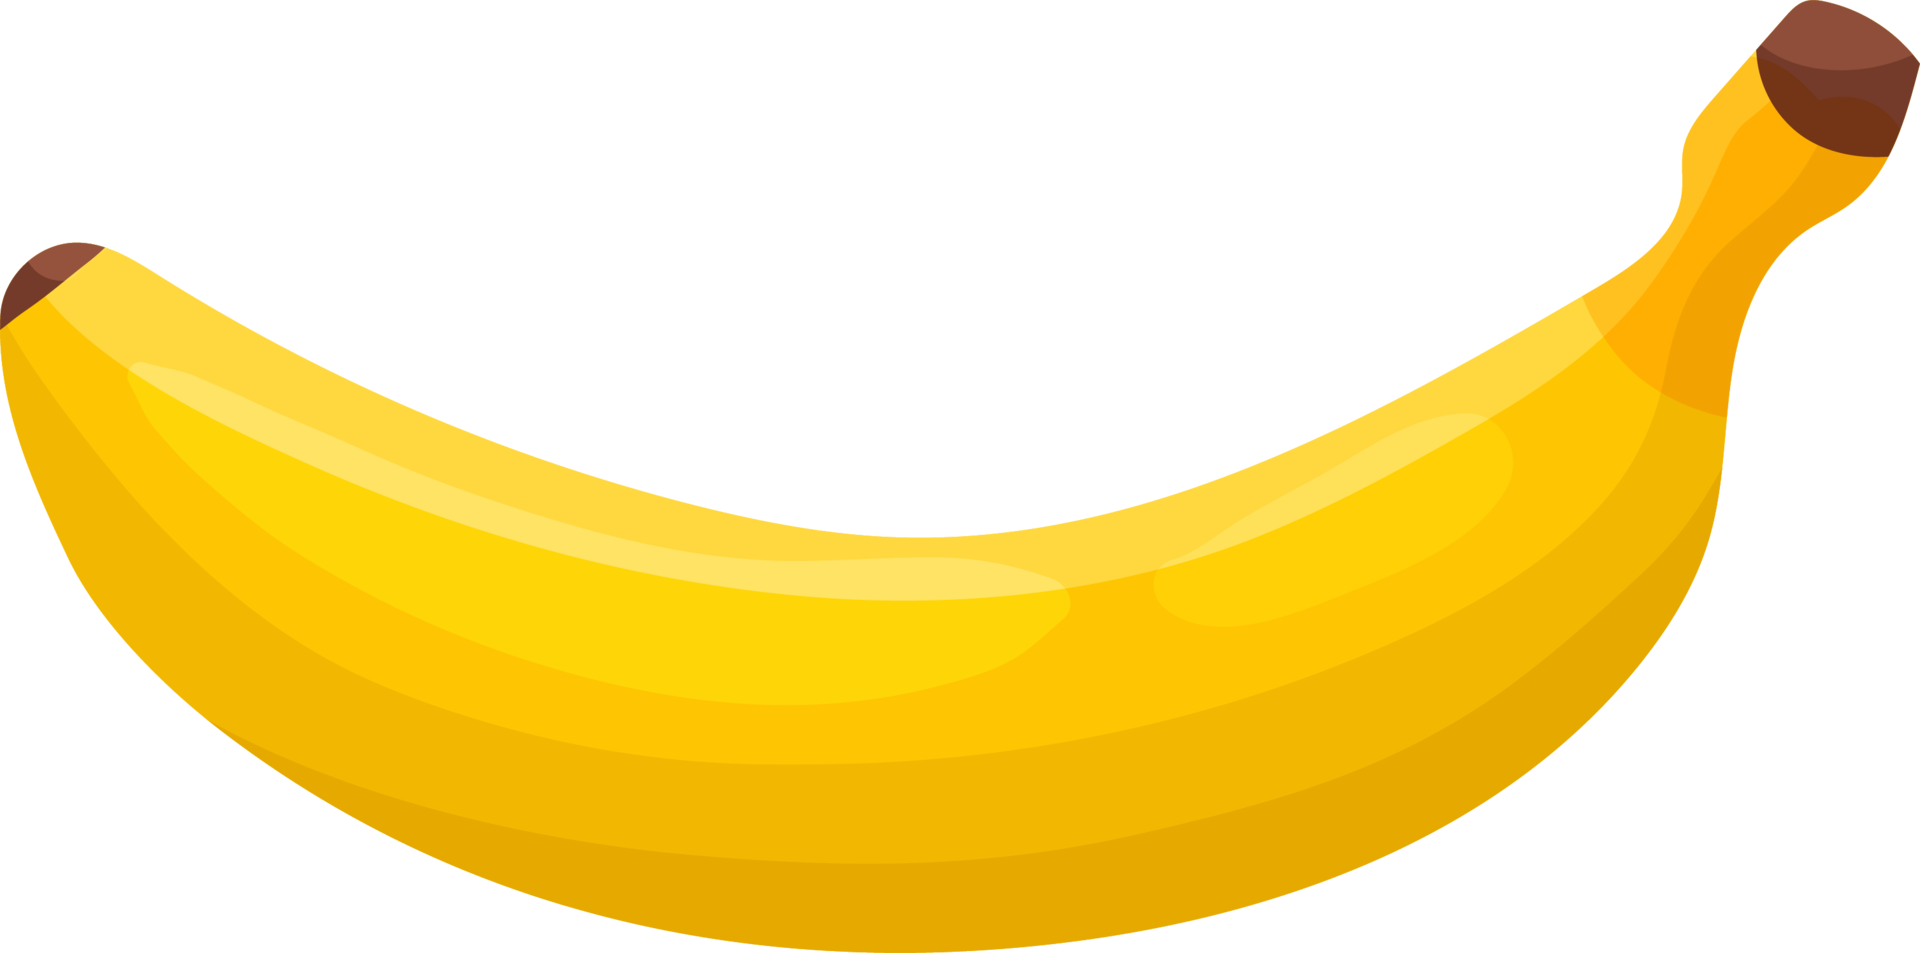 la banane est un fruit jaune. png